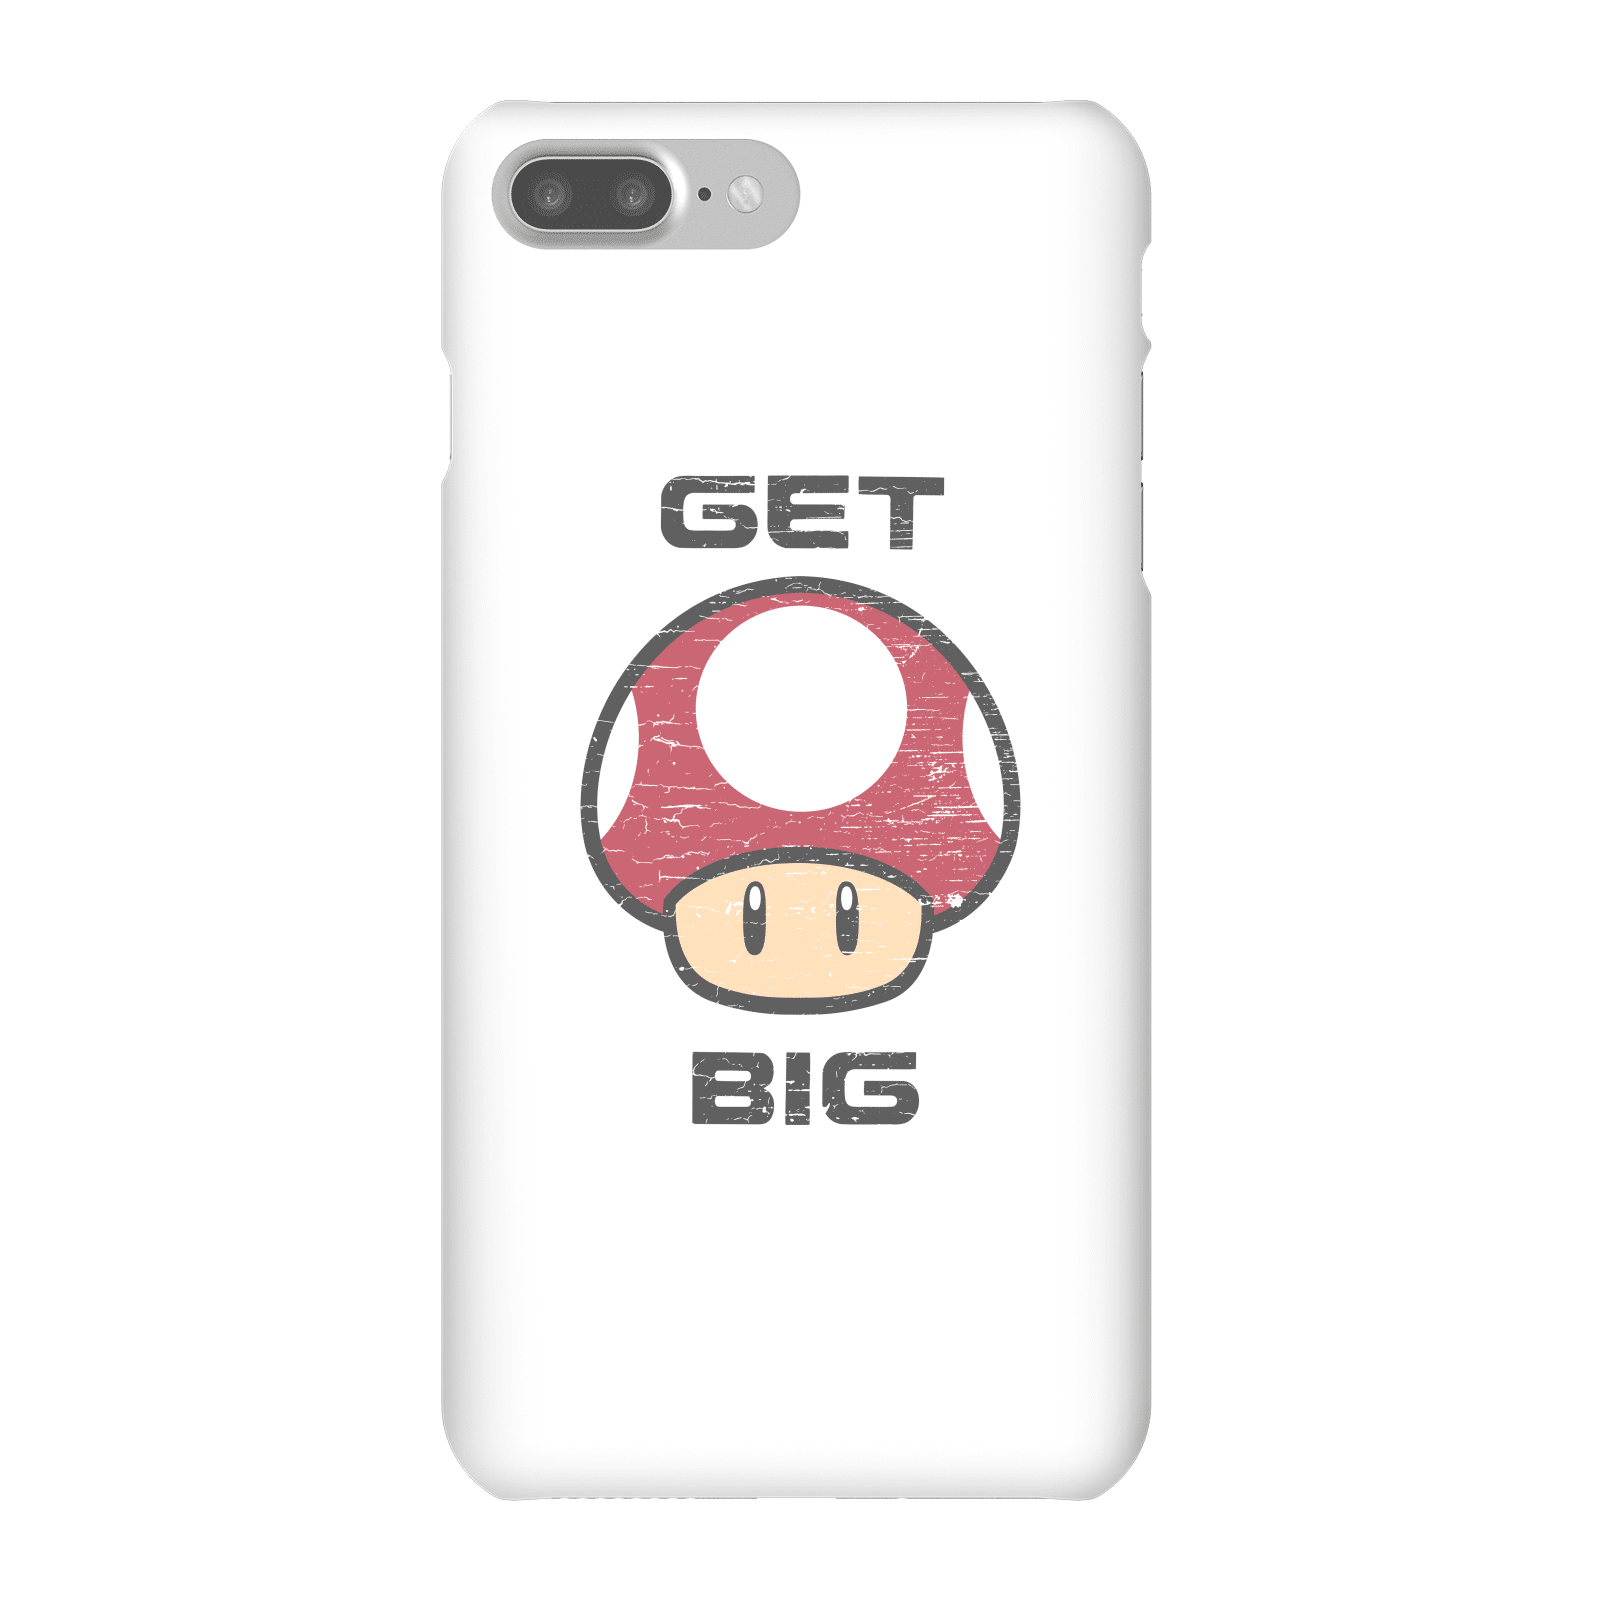 Nintendo Super Mario Get Big Mushroom Phone Case - iPhone 7 Plus - Snap Case - Gloss